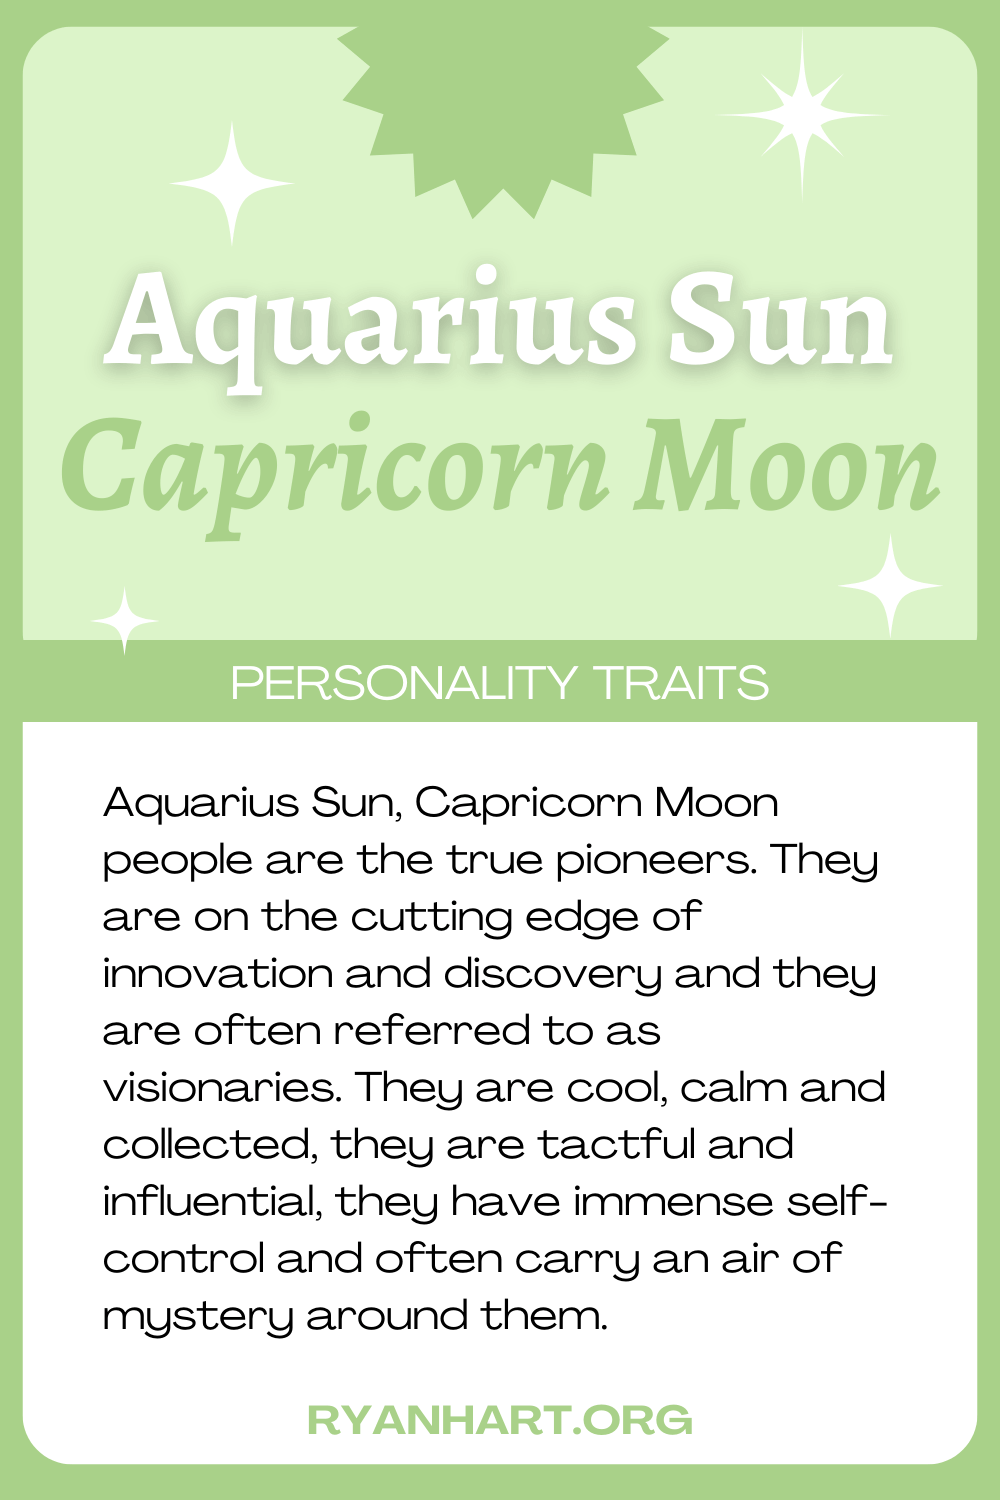  Feartan pearsantachd Aquarius Sun Capricorn Moon